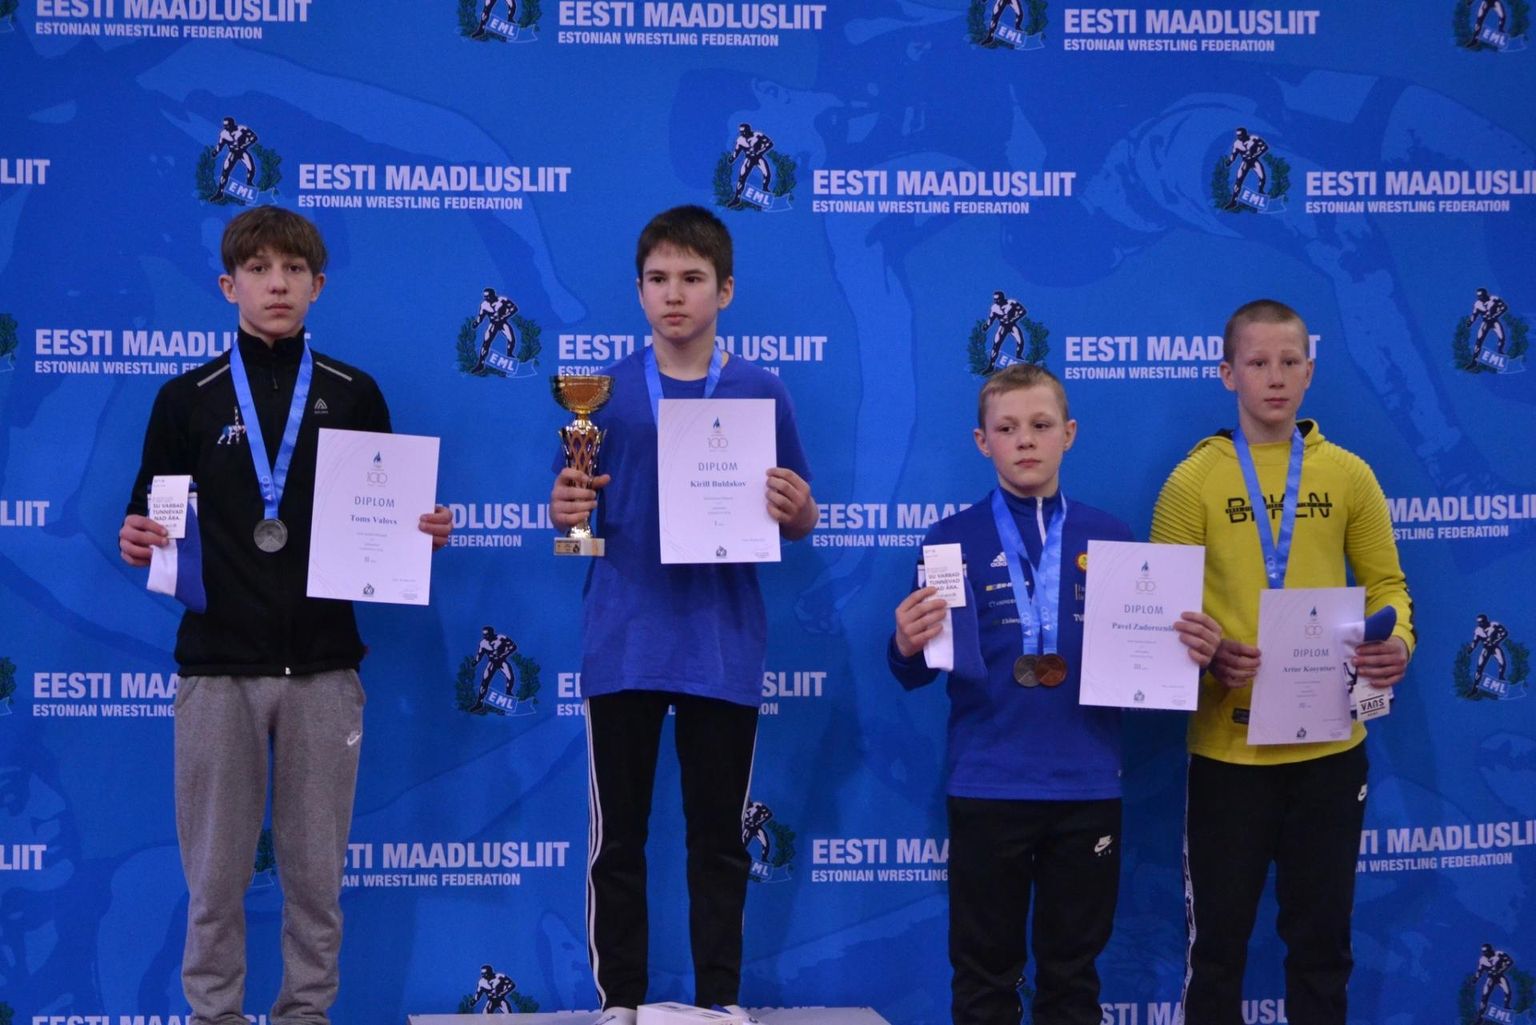 Vabamaadluses võitis Valga SK 1Piir esindaja Toms Valovs kehakaalus -48 kg hõbeda.